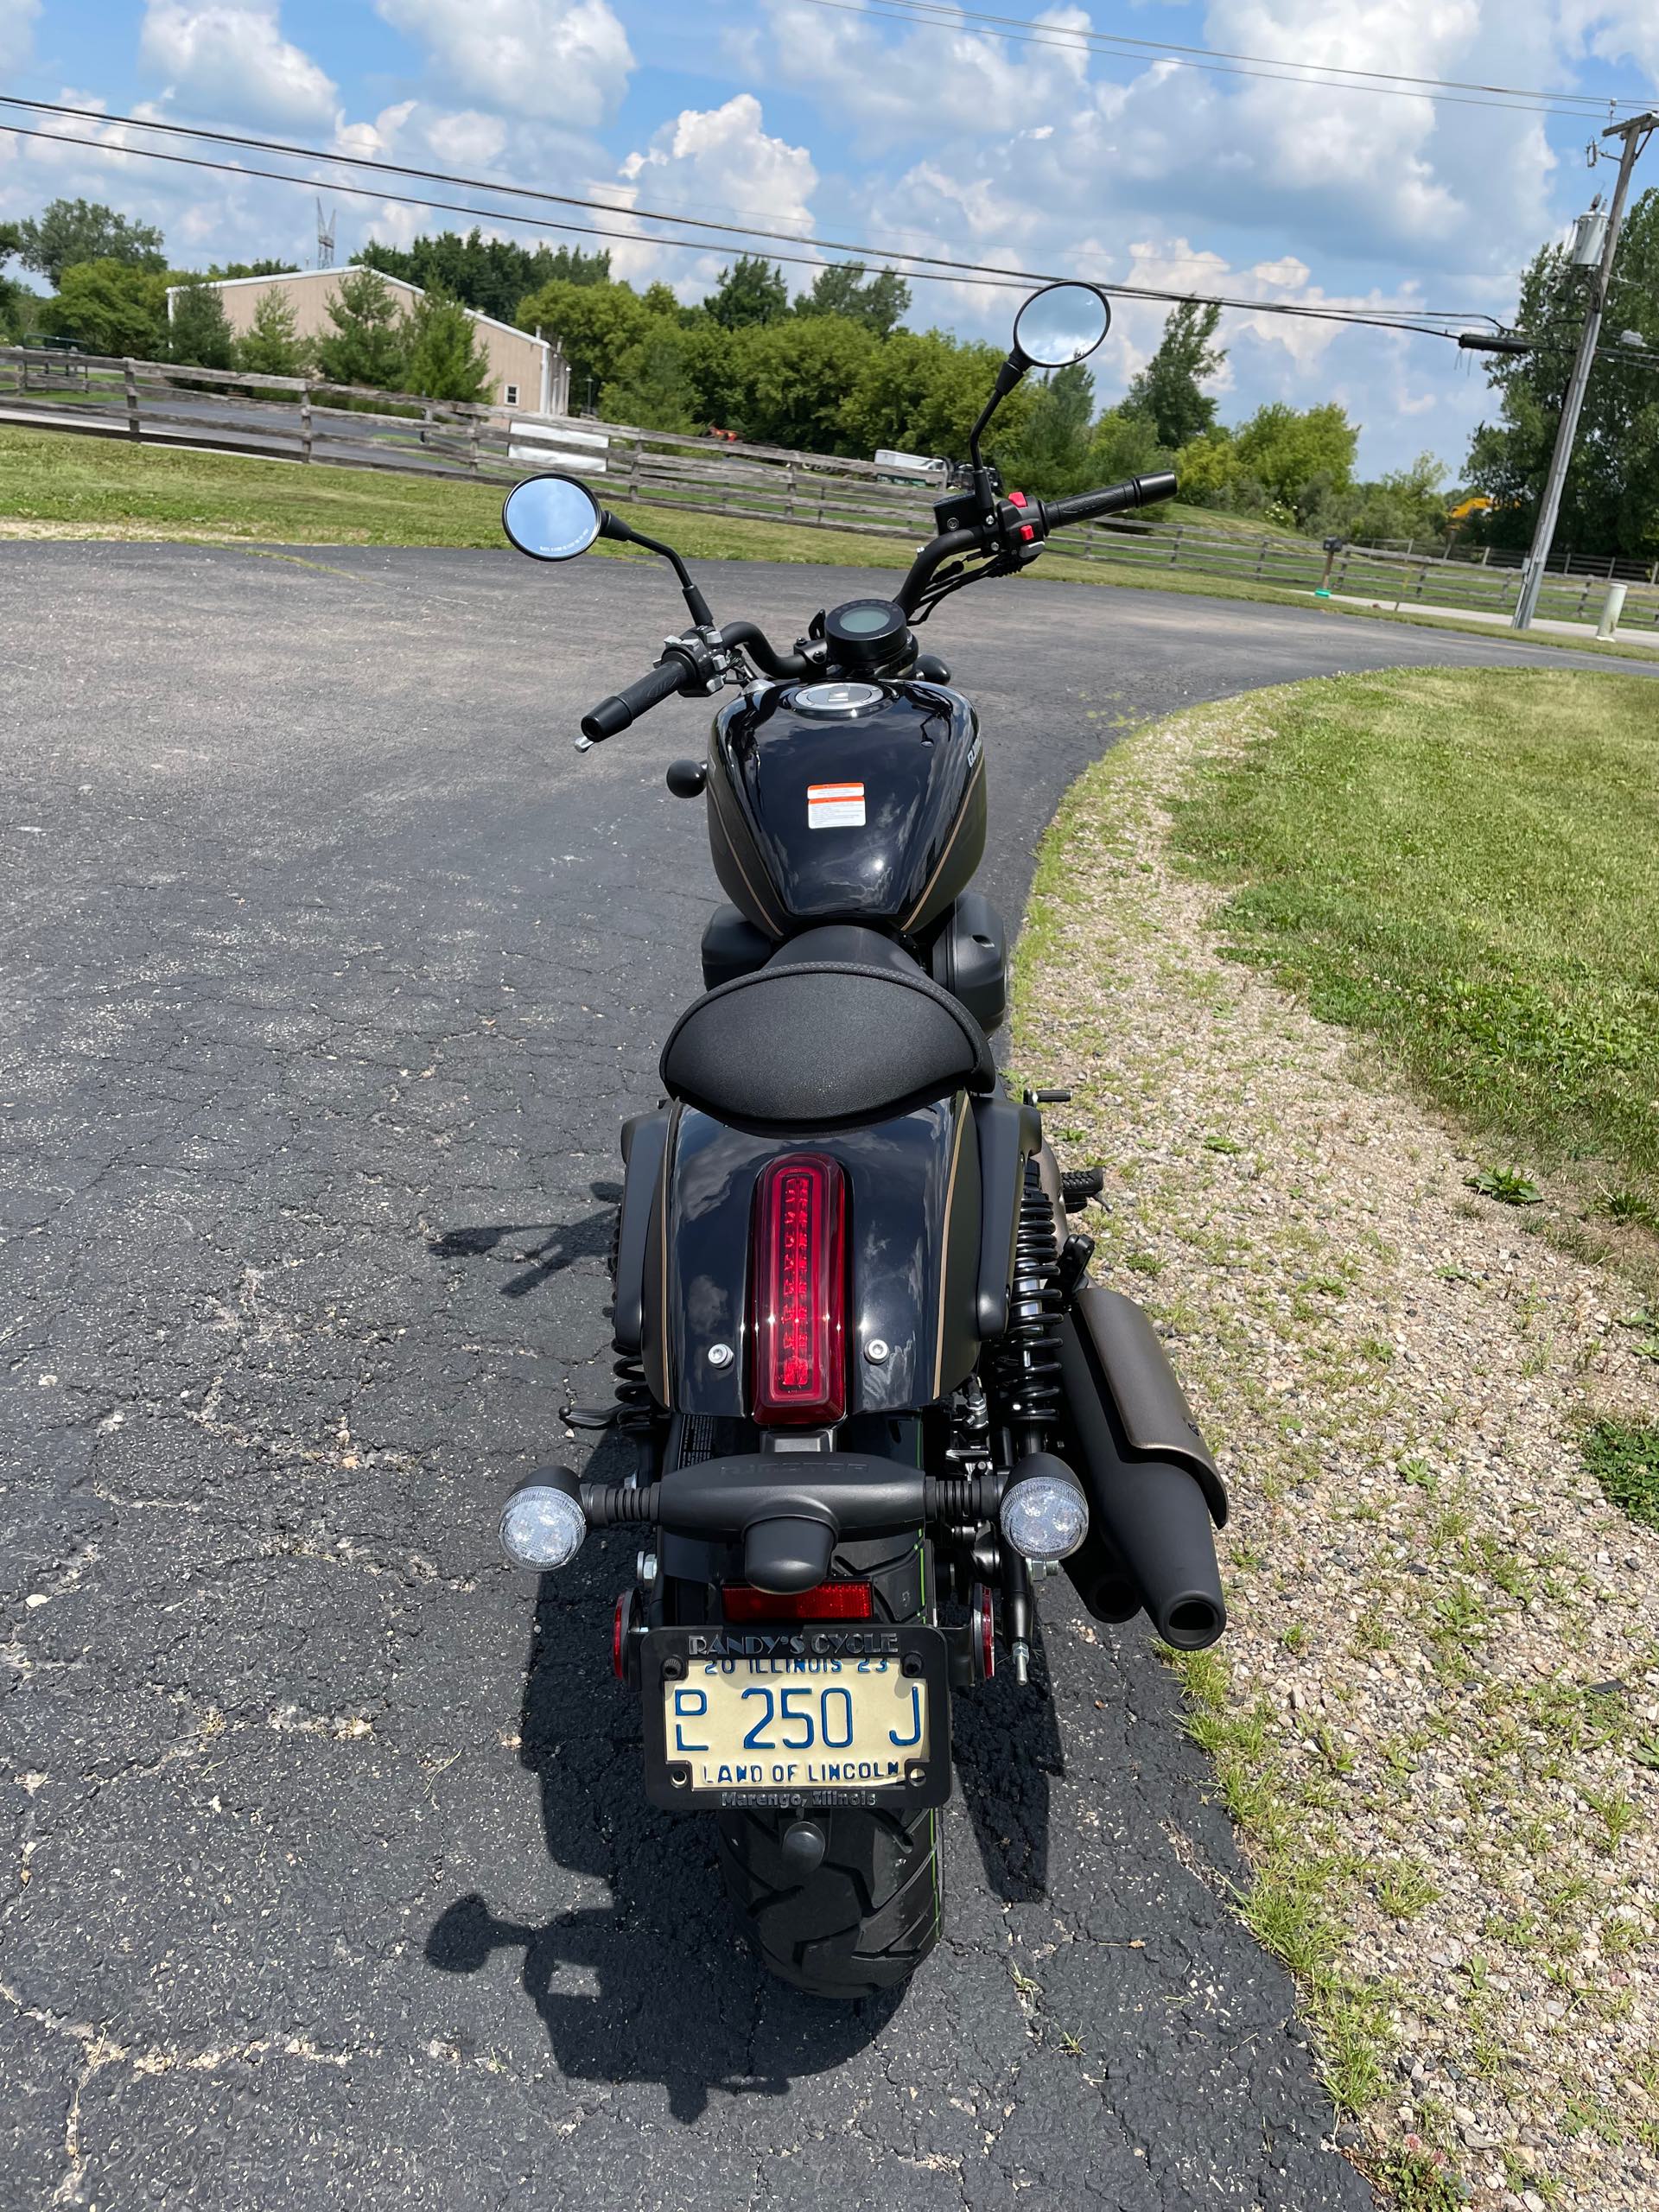 2023 QJ MOTOR SRV300 - BLACK at Randy's Cycle